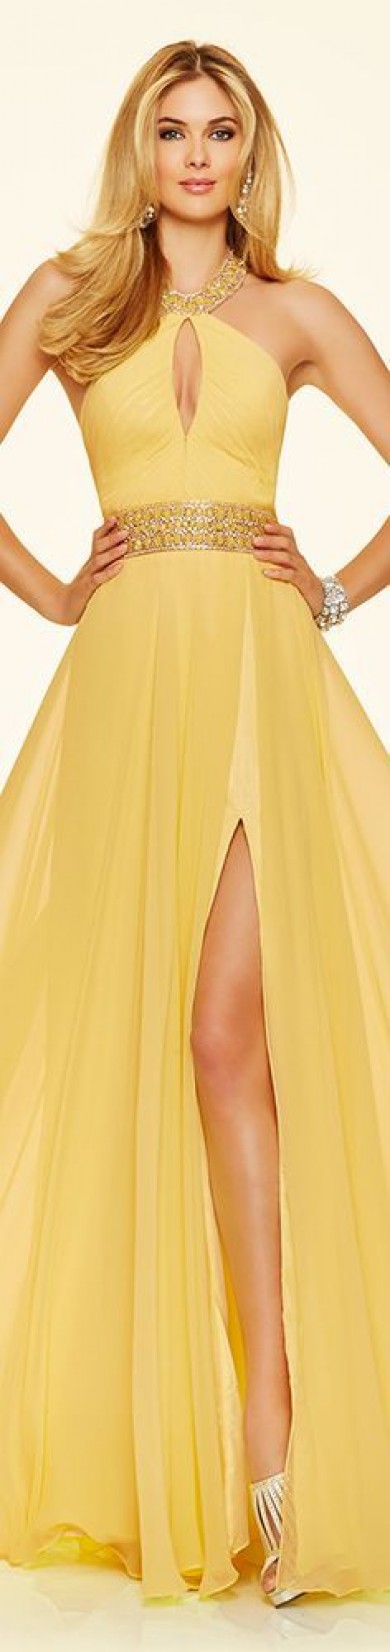 Đầm dạ hội đẹp màu vàng